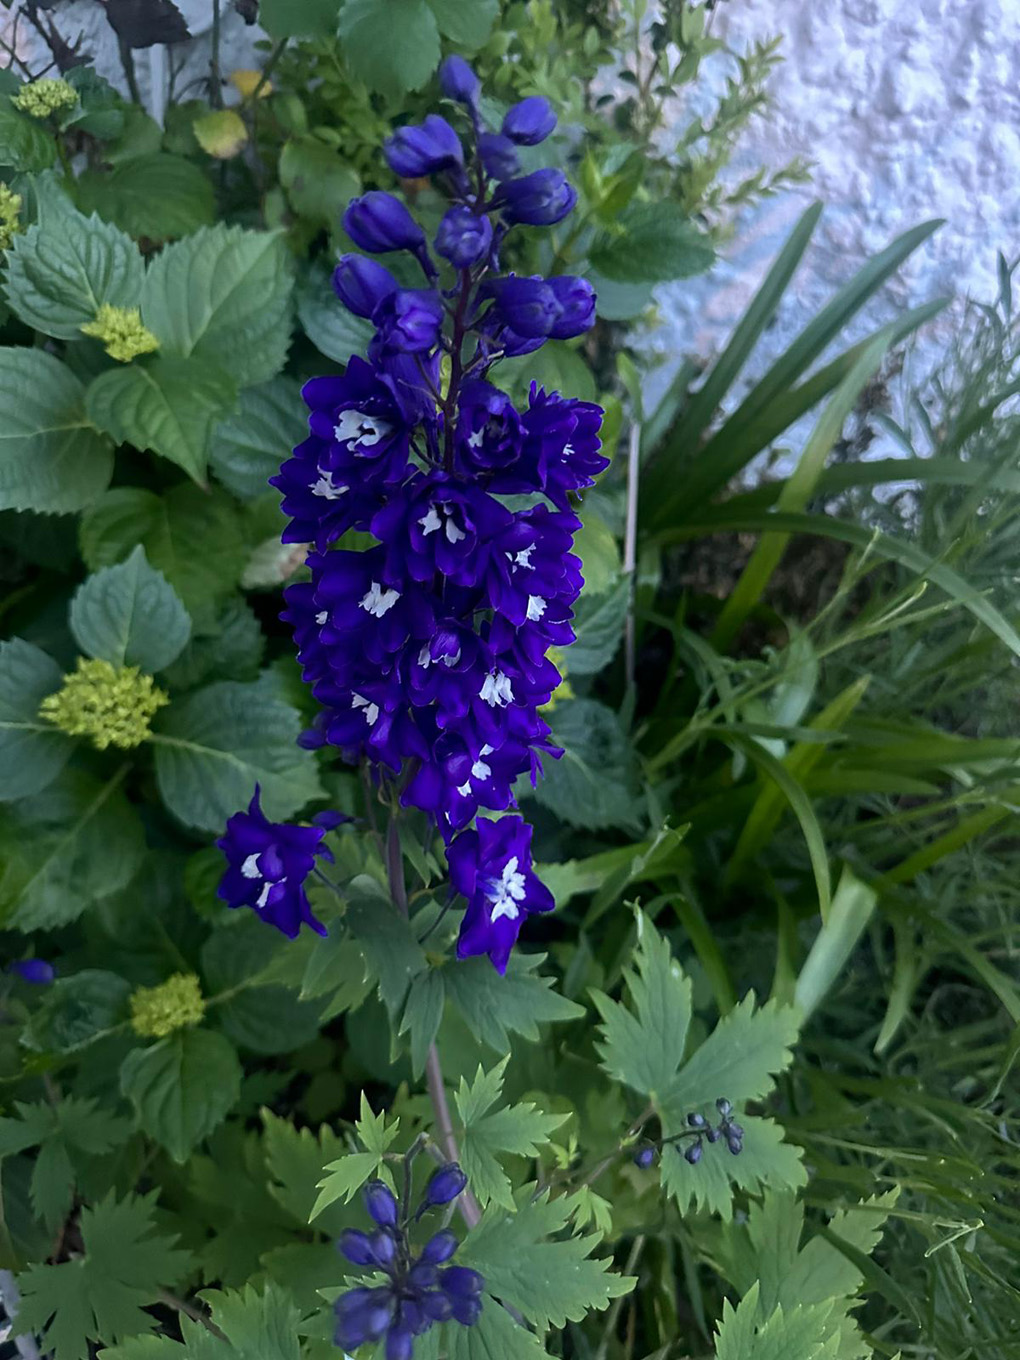 Purple / blue flower